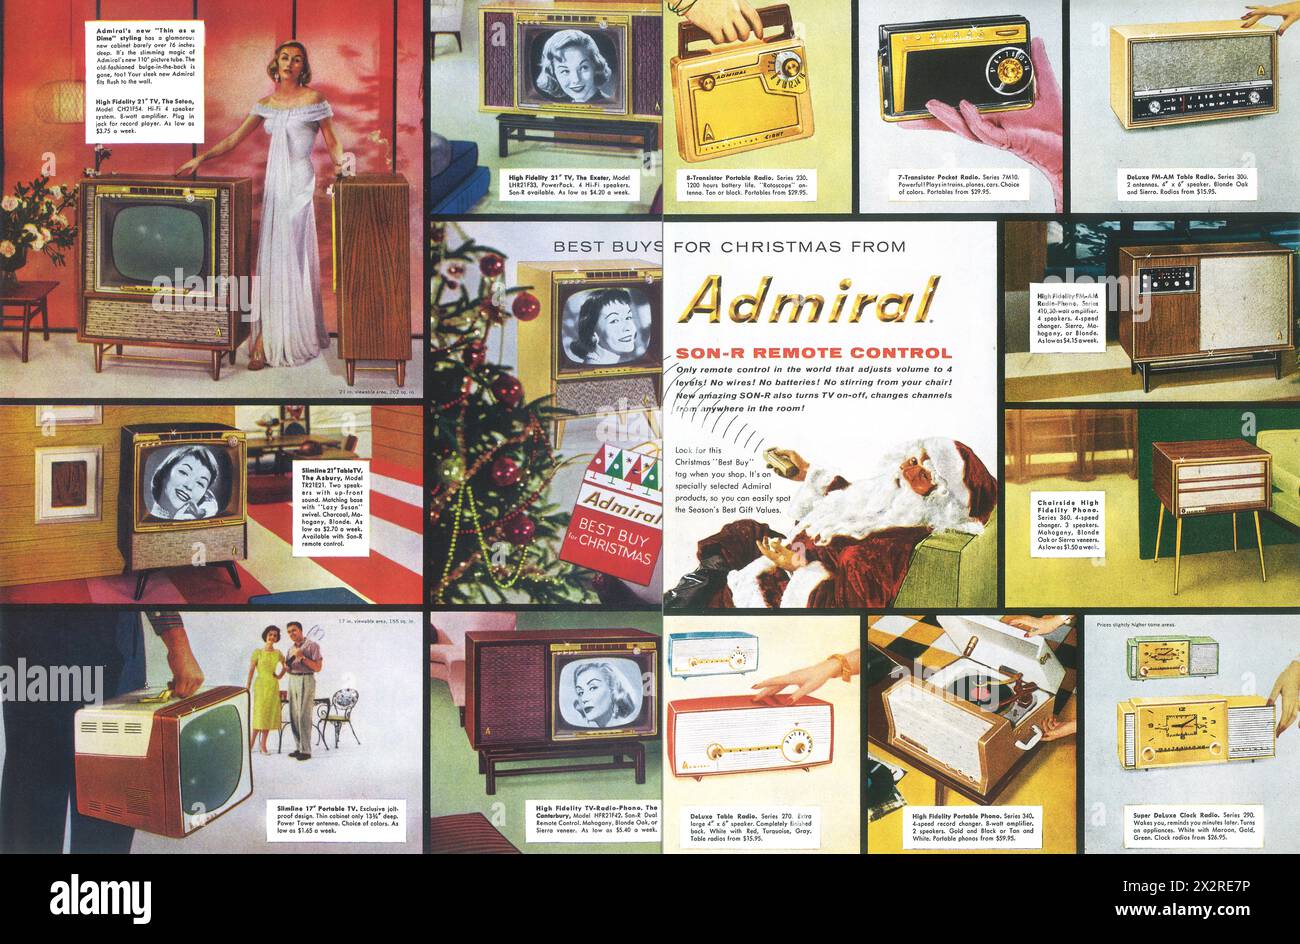 1957 televisori Admiral, radio, annunci per lettori di dischi - i migliori acquisti natalizi da Admiral - Babbo Natale con telecomando Son-R. Foto Stock